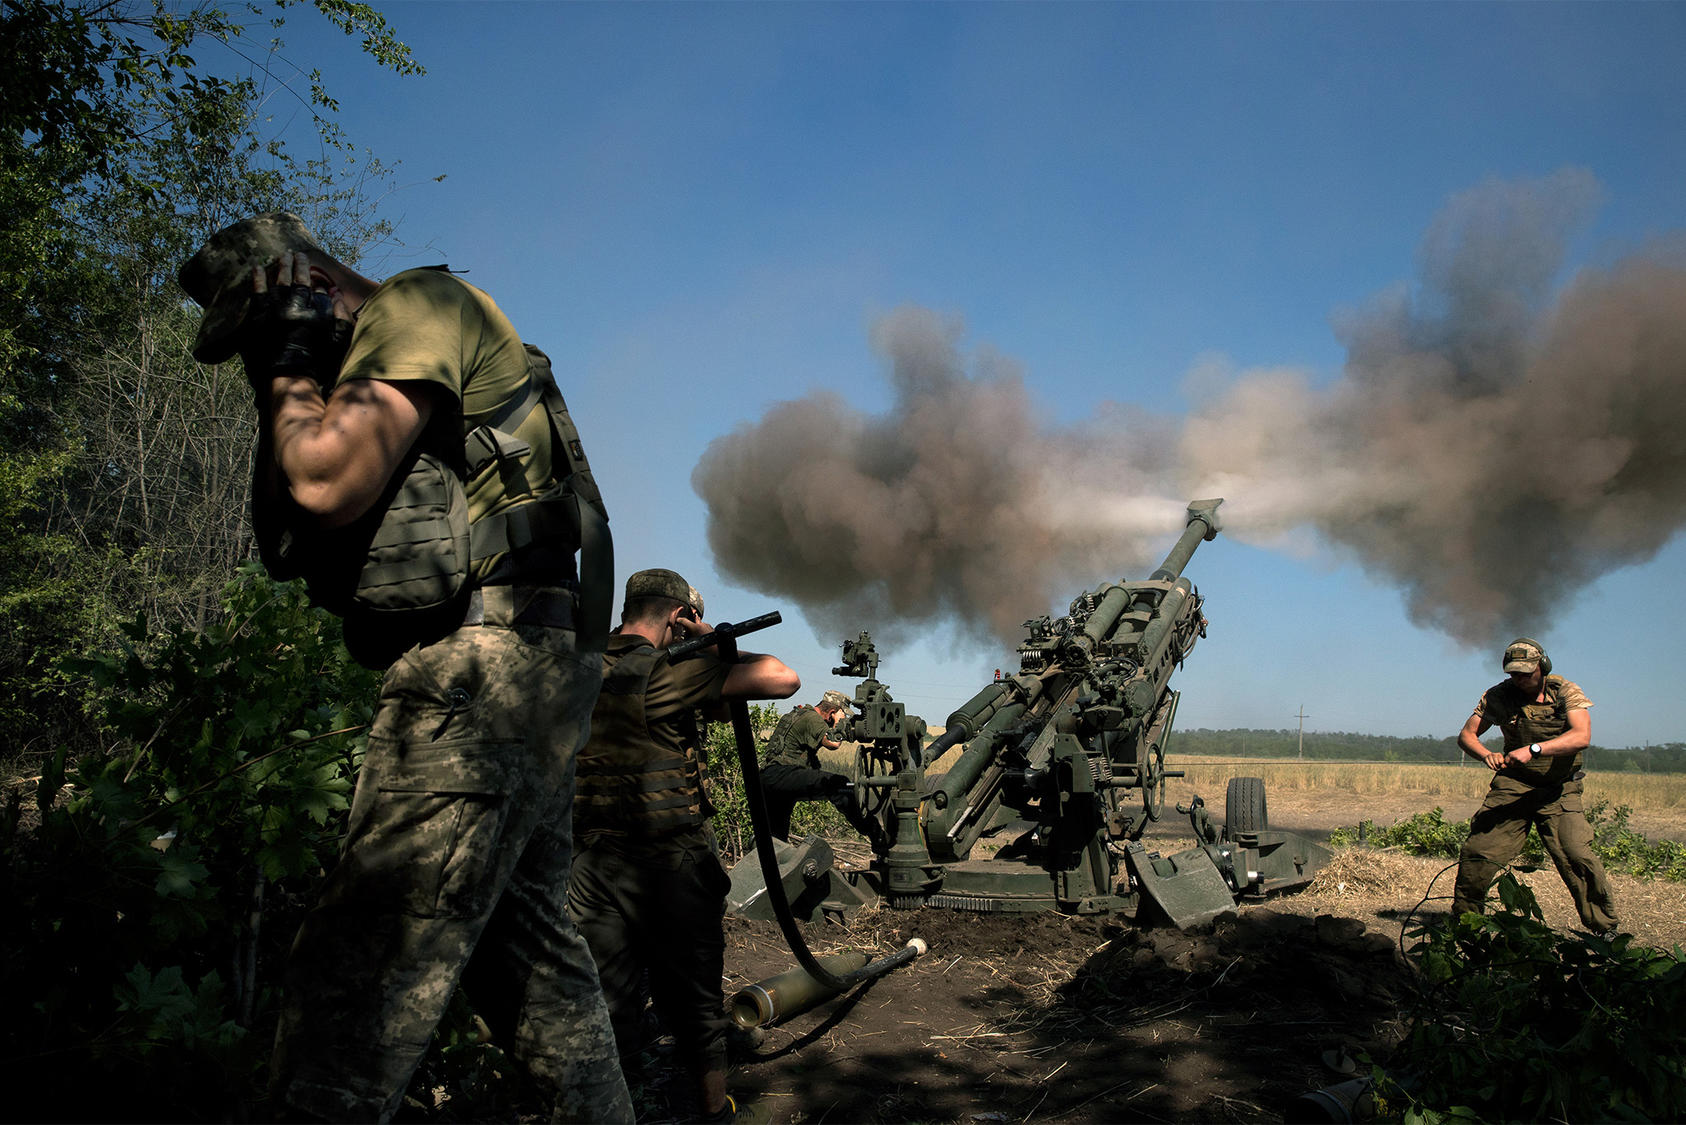 Ρωσική αντεπίθεση σε Ντονέτσκ και Λουγκάσνκ: Λίμαν και Κουπιάνσκ δέχονται επίθεση 15.000 Ρώσων